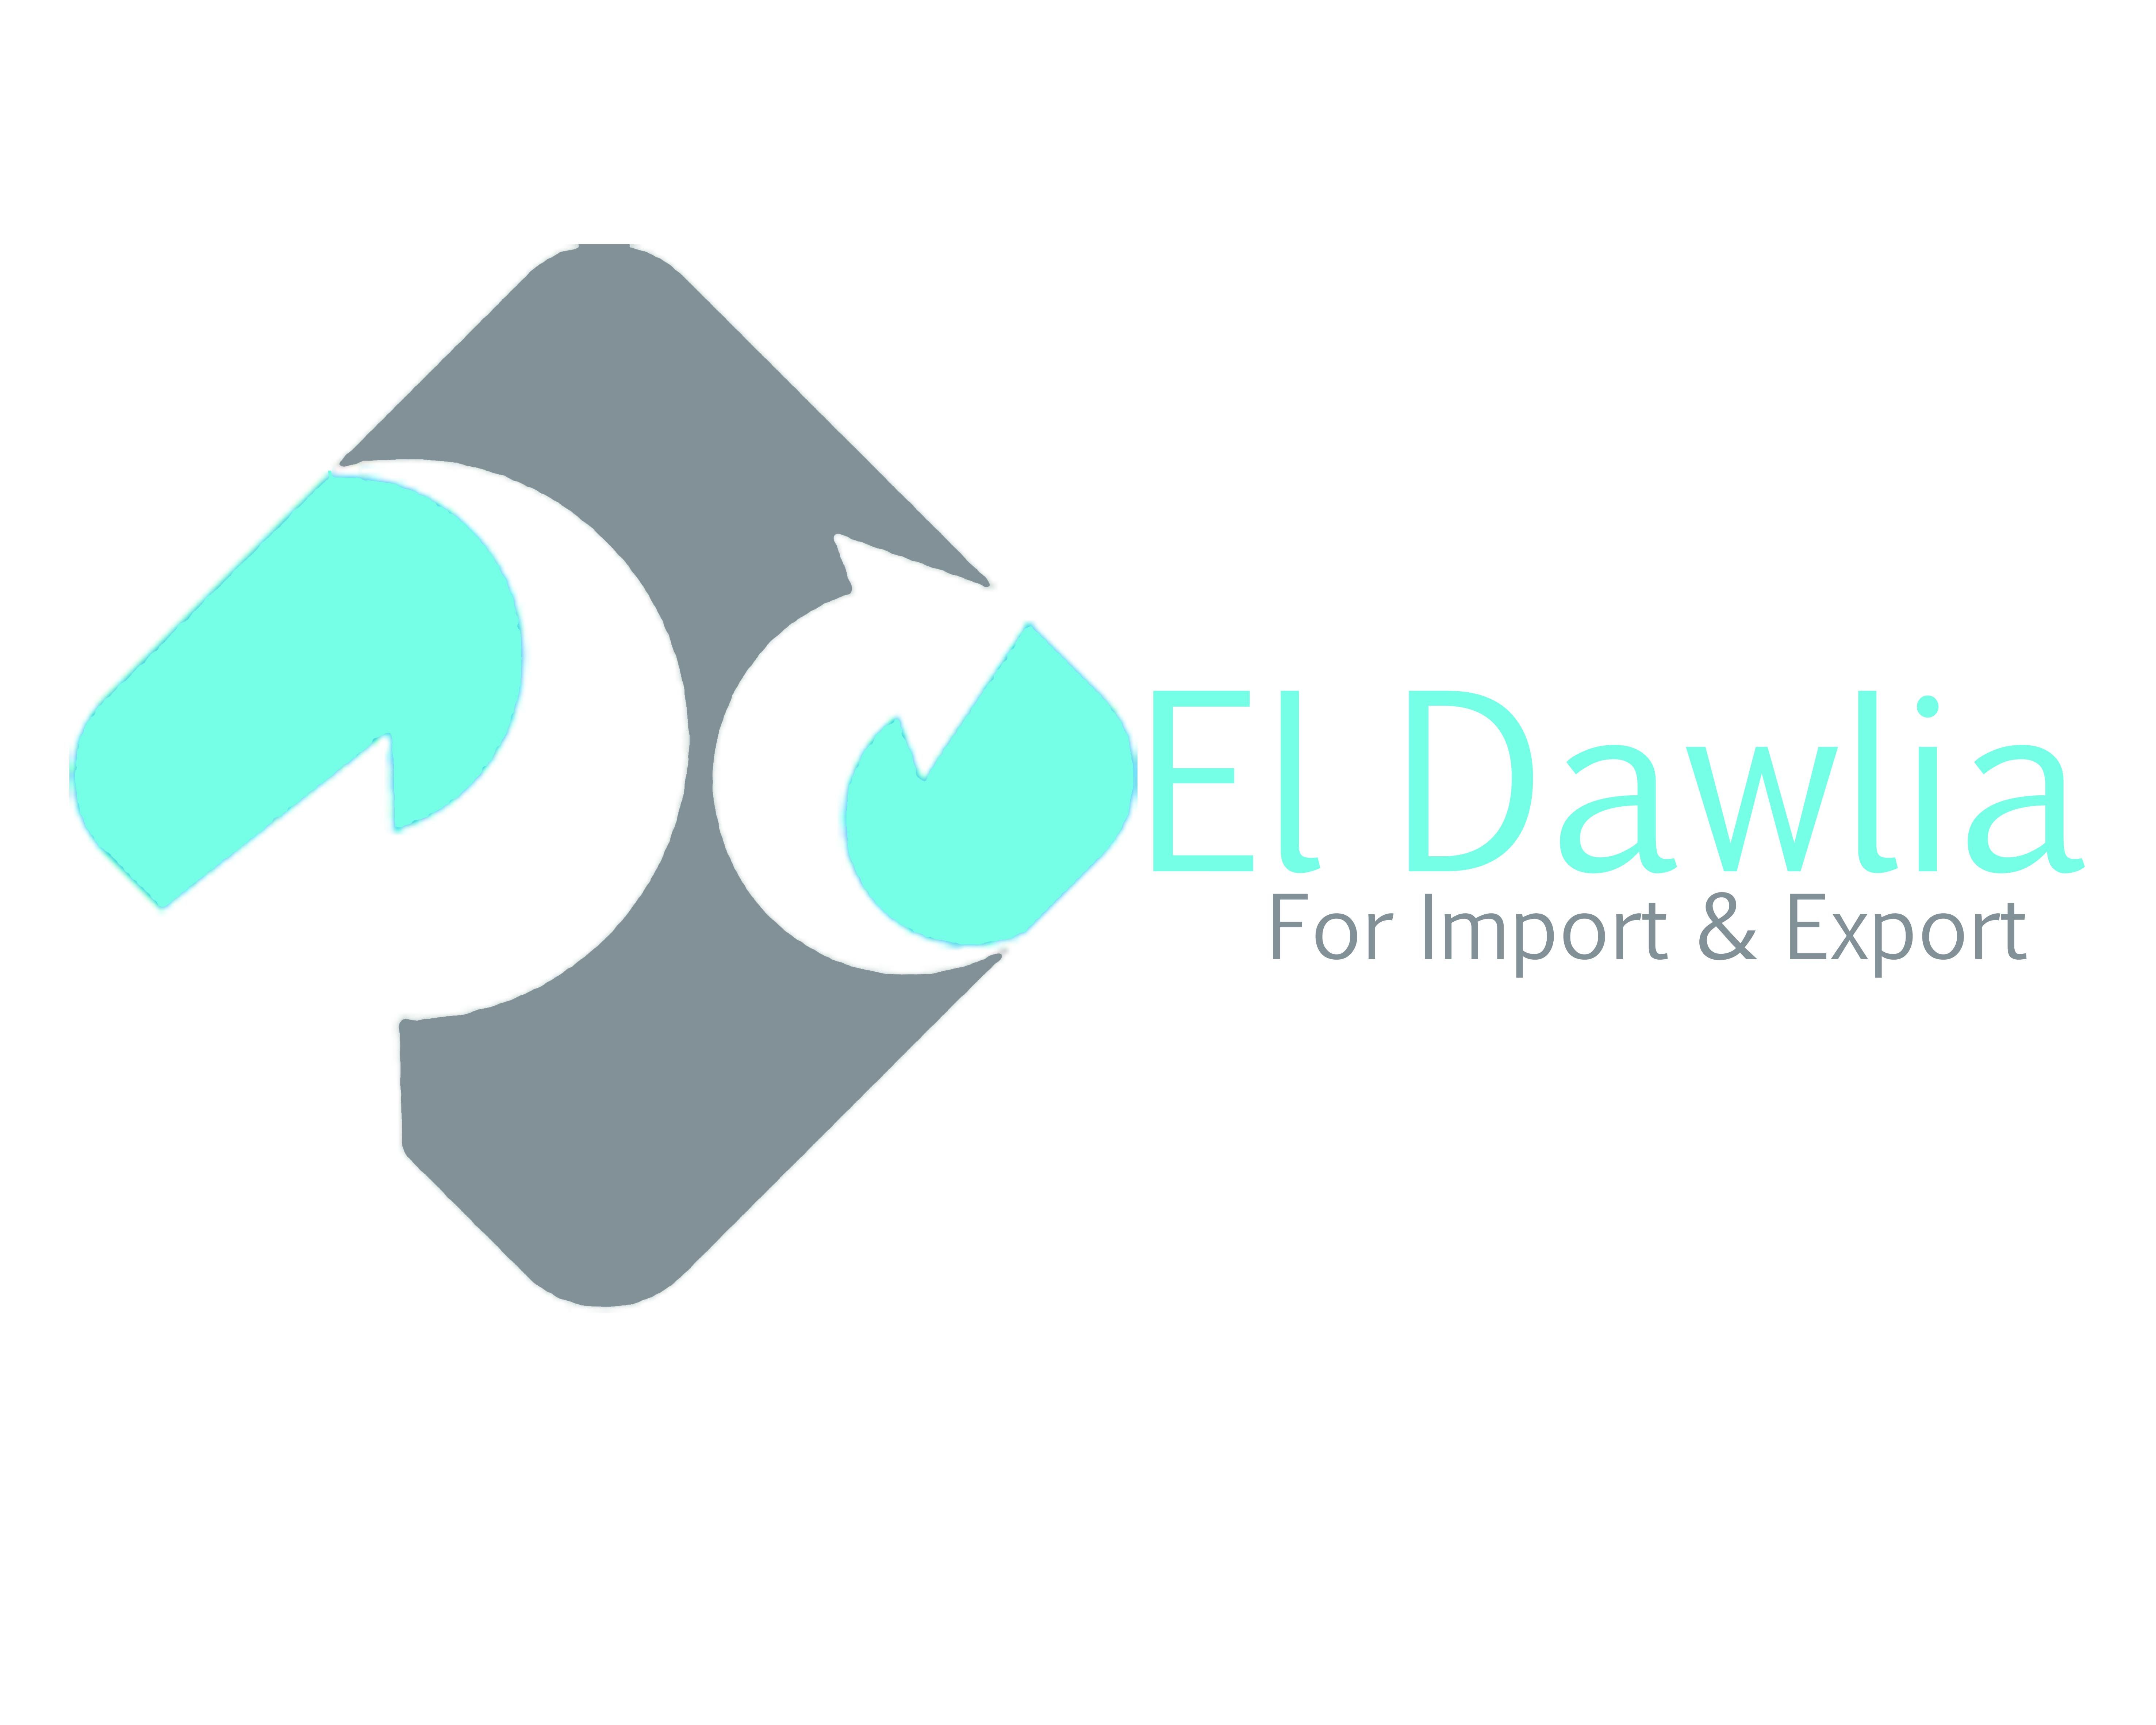 EL-Dawlia